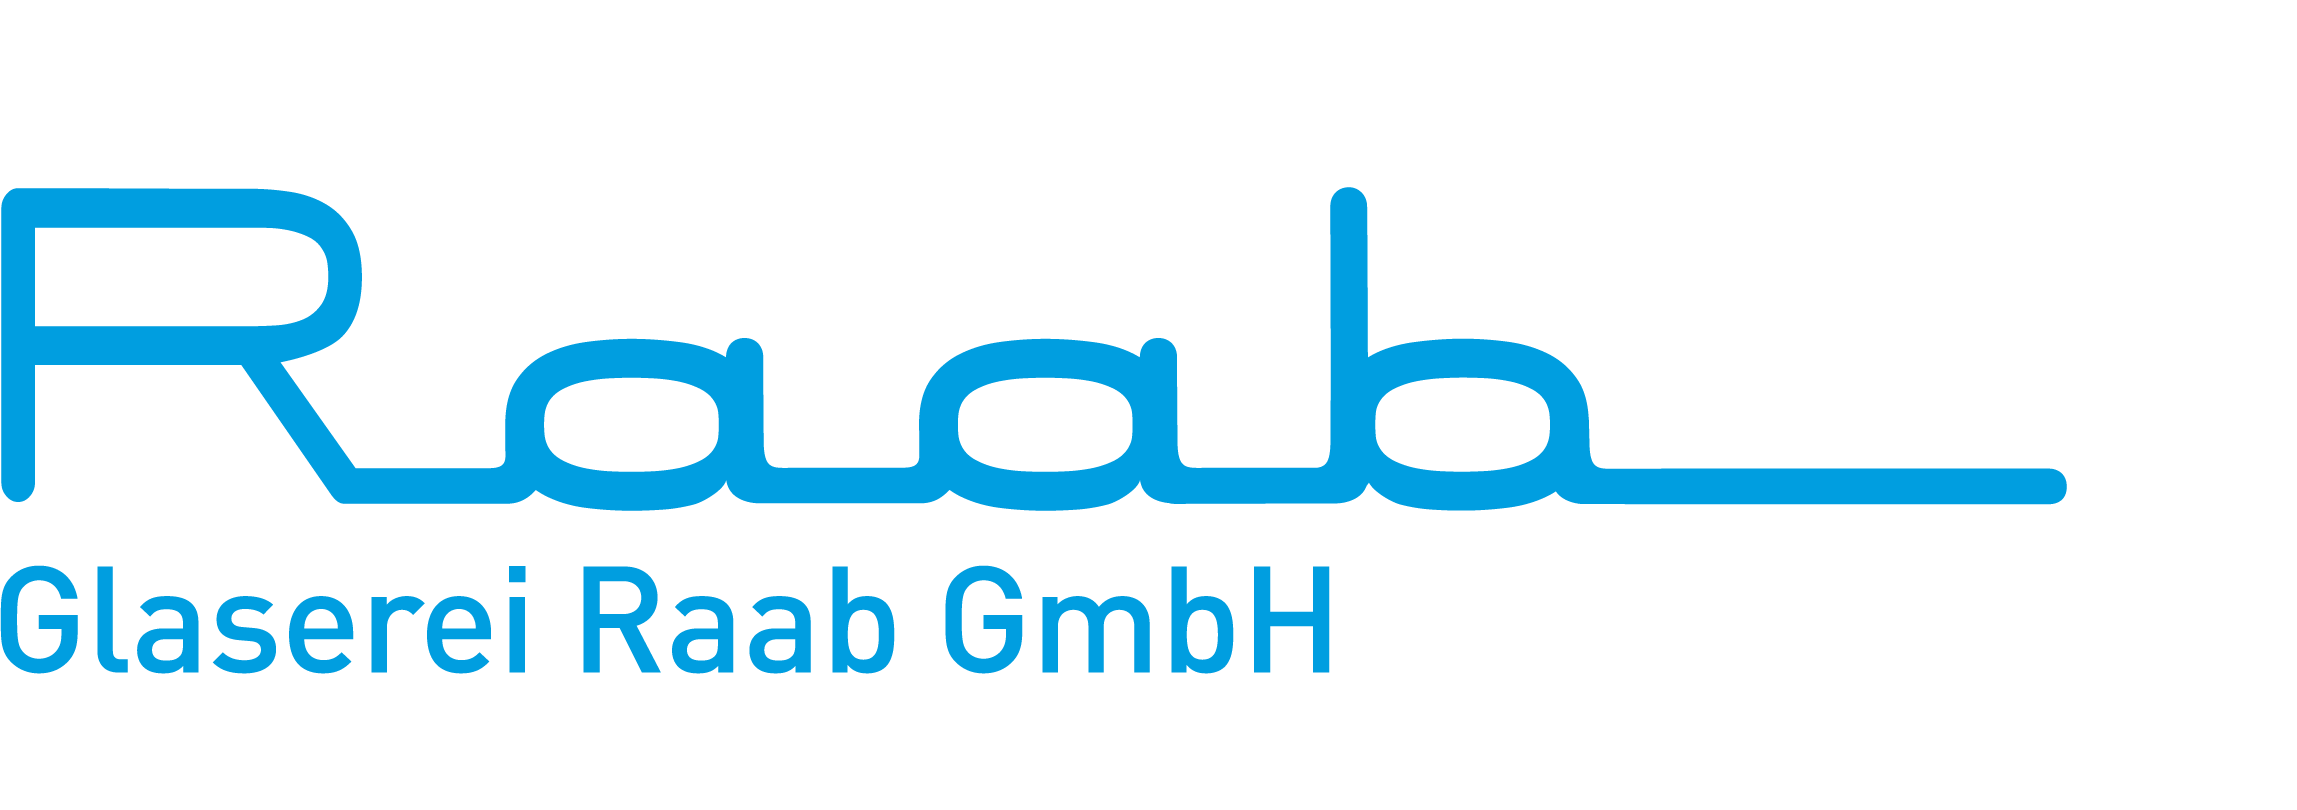 Glaserei Raab GmbH, München